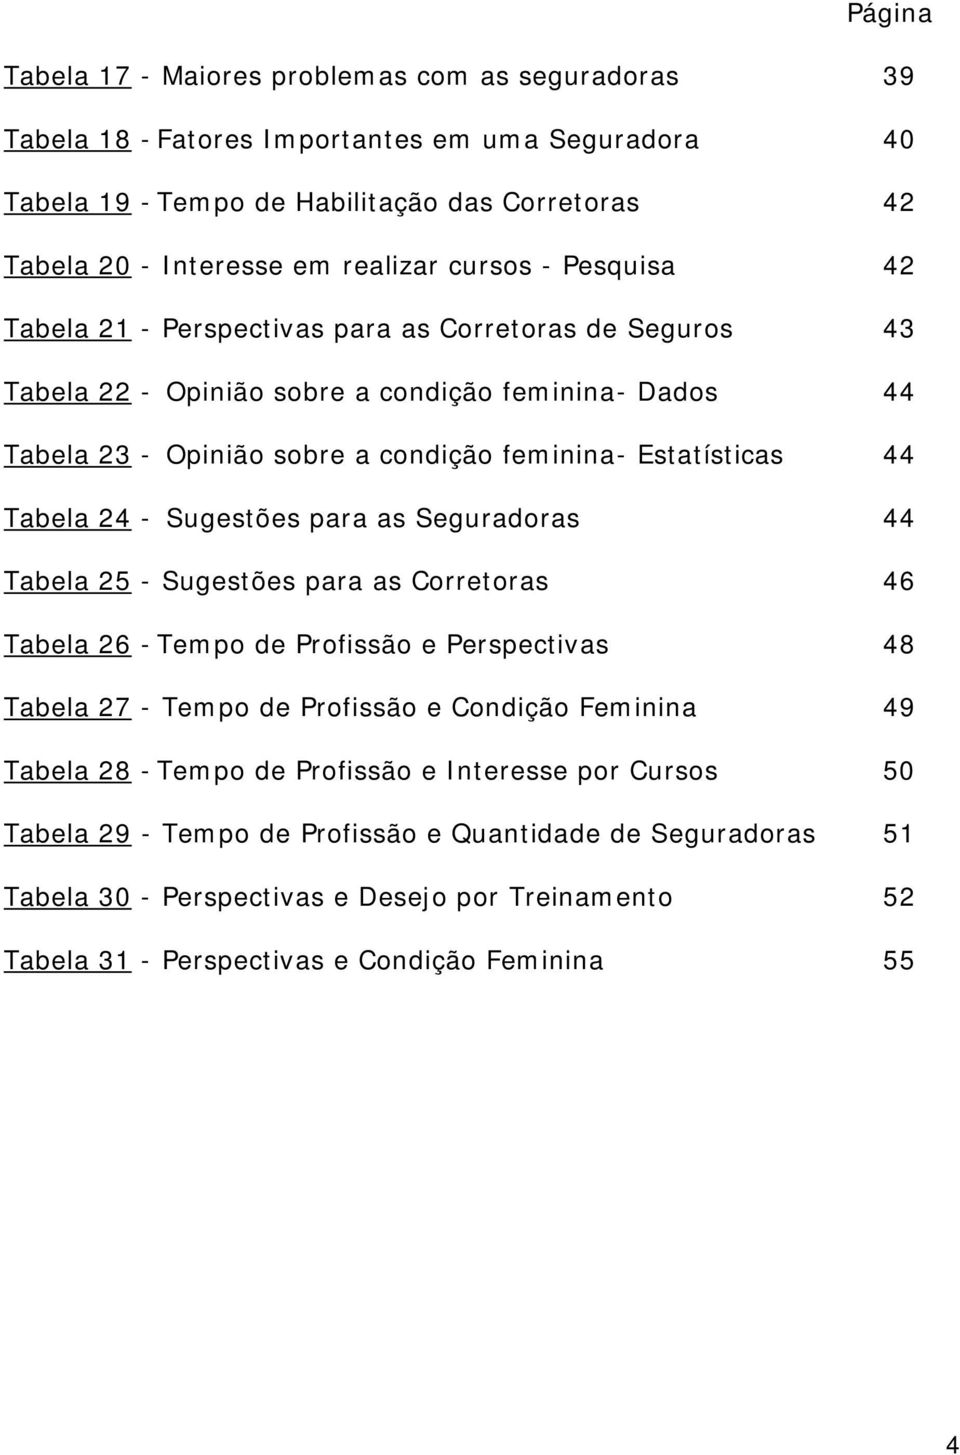 Tabela 24 - Sugestões para as Seguradoras 44 Tabela 25 - Sugestões para as Corretoras 46 Tabela 26 - Tempo de Profissão e Perspectivas 48 Tabela 27 - Tempo de Profissão e Condição Feminina 49 Tabela